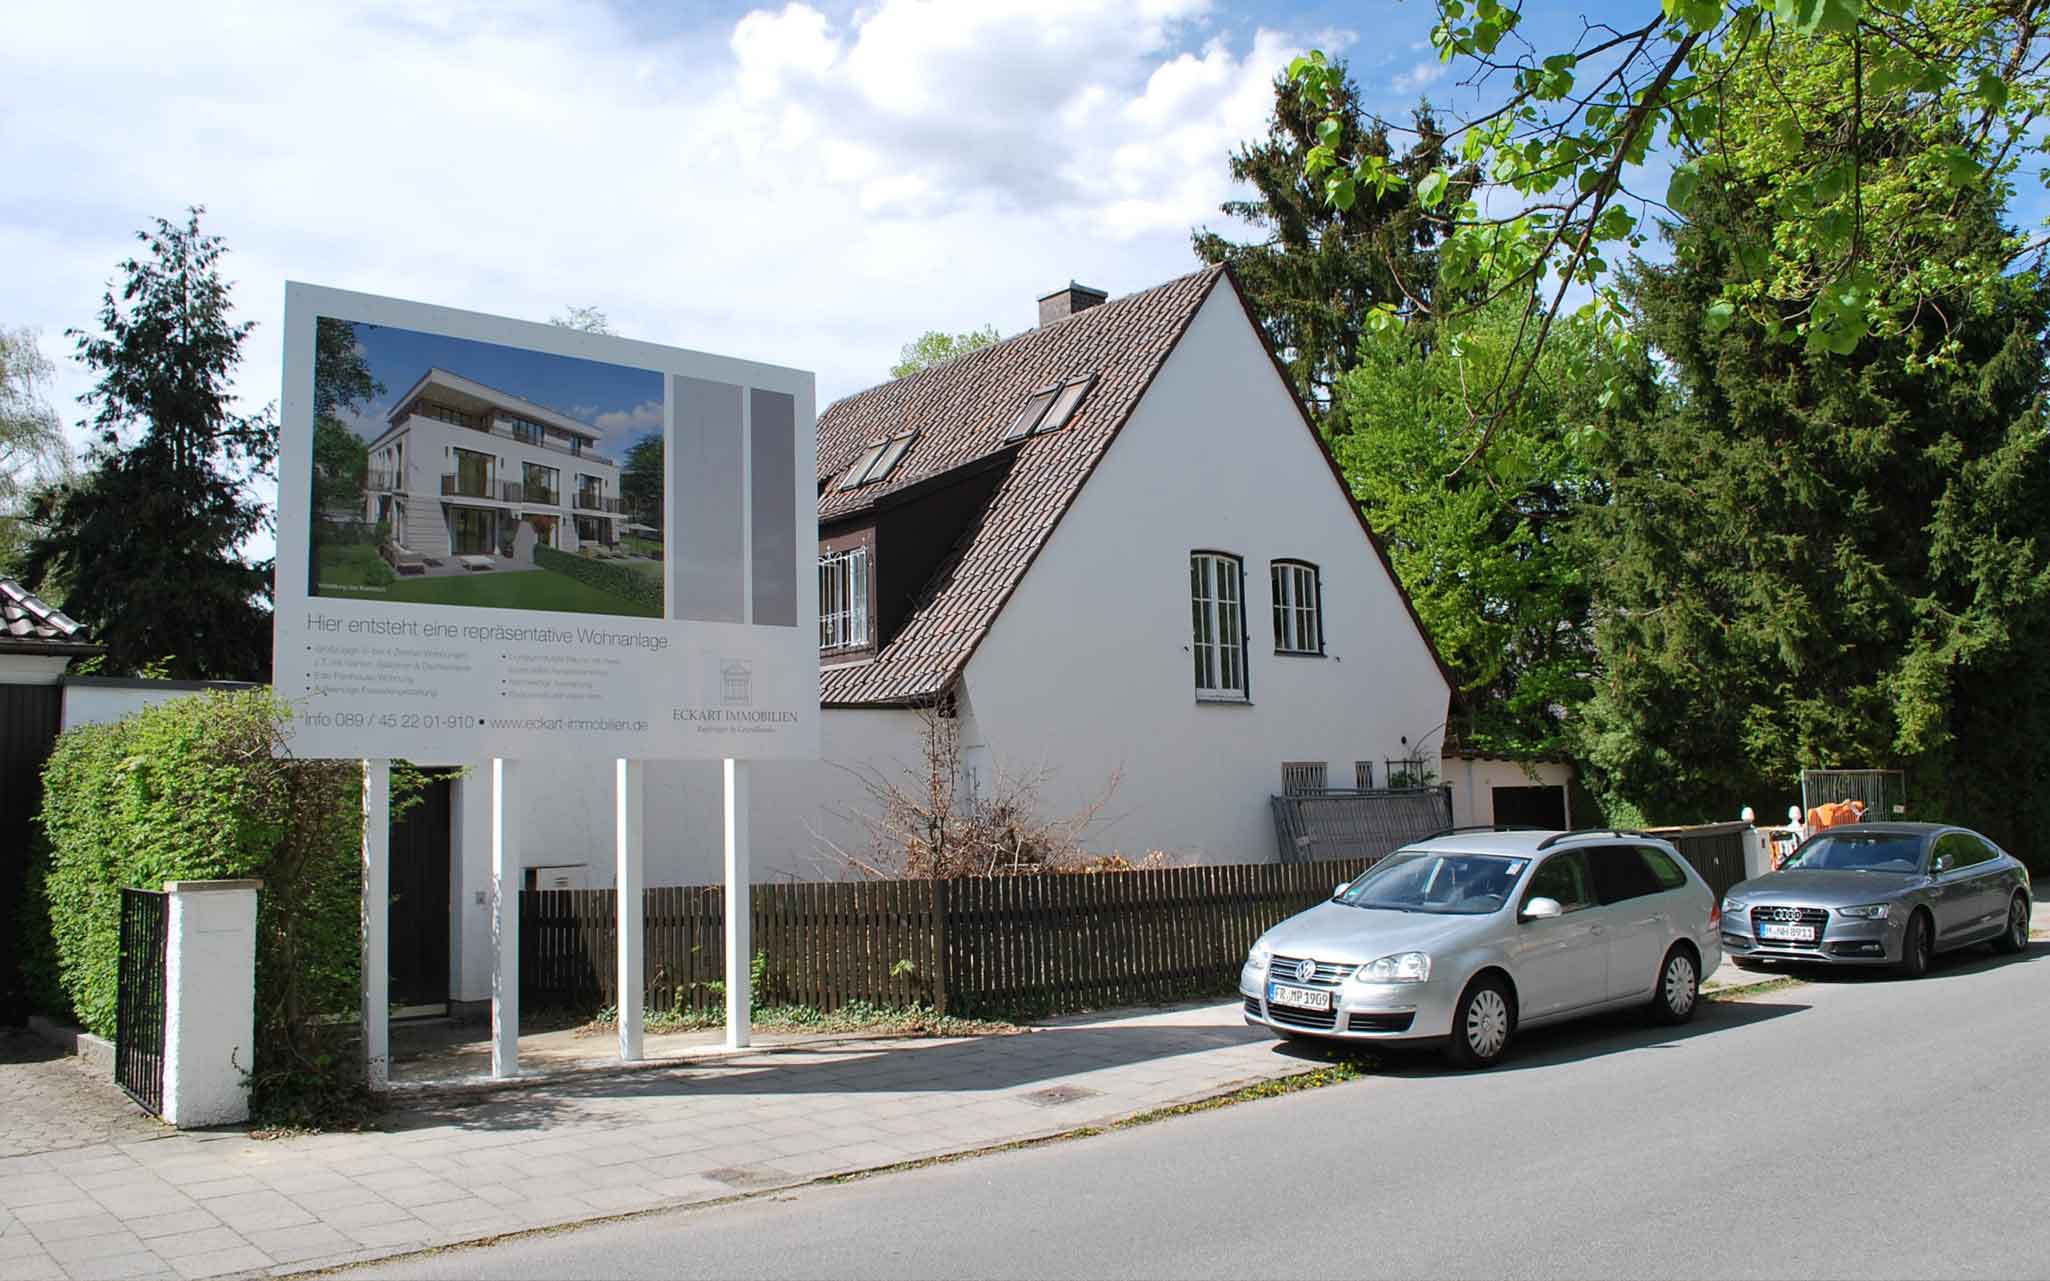 Grünbauerstraße